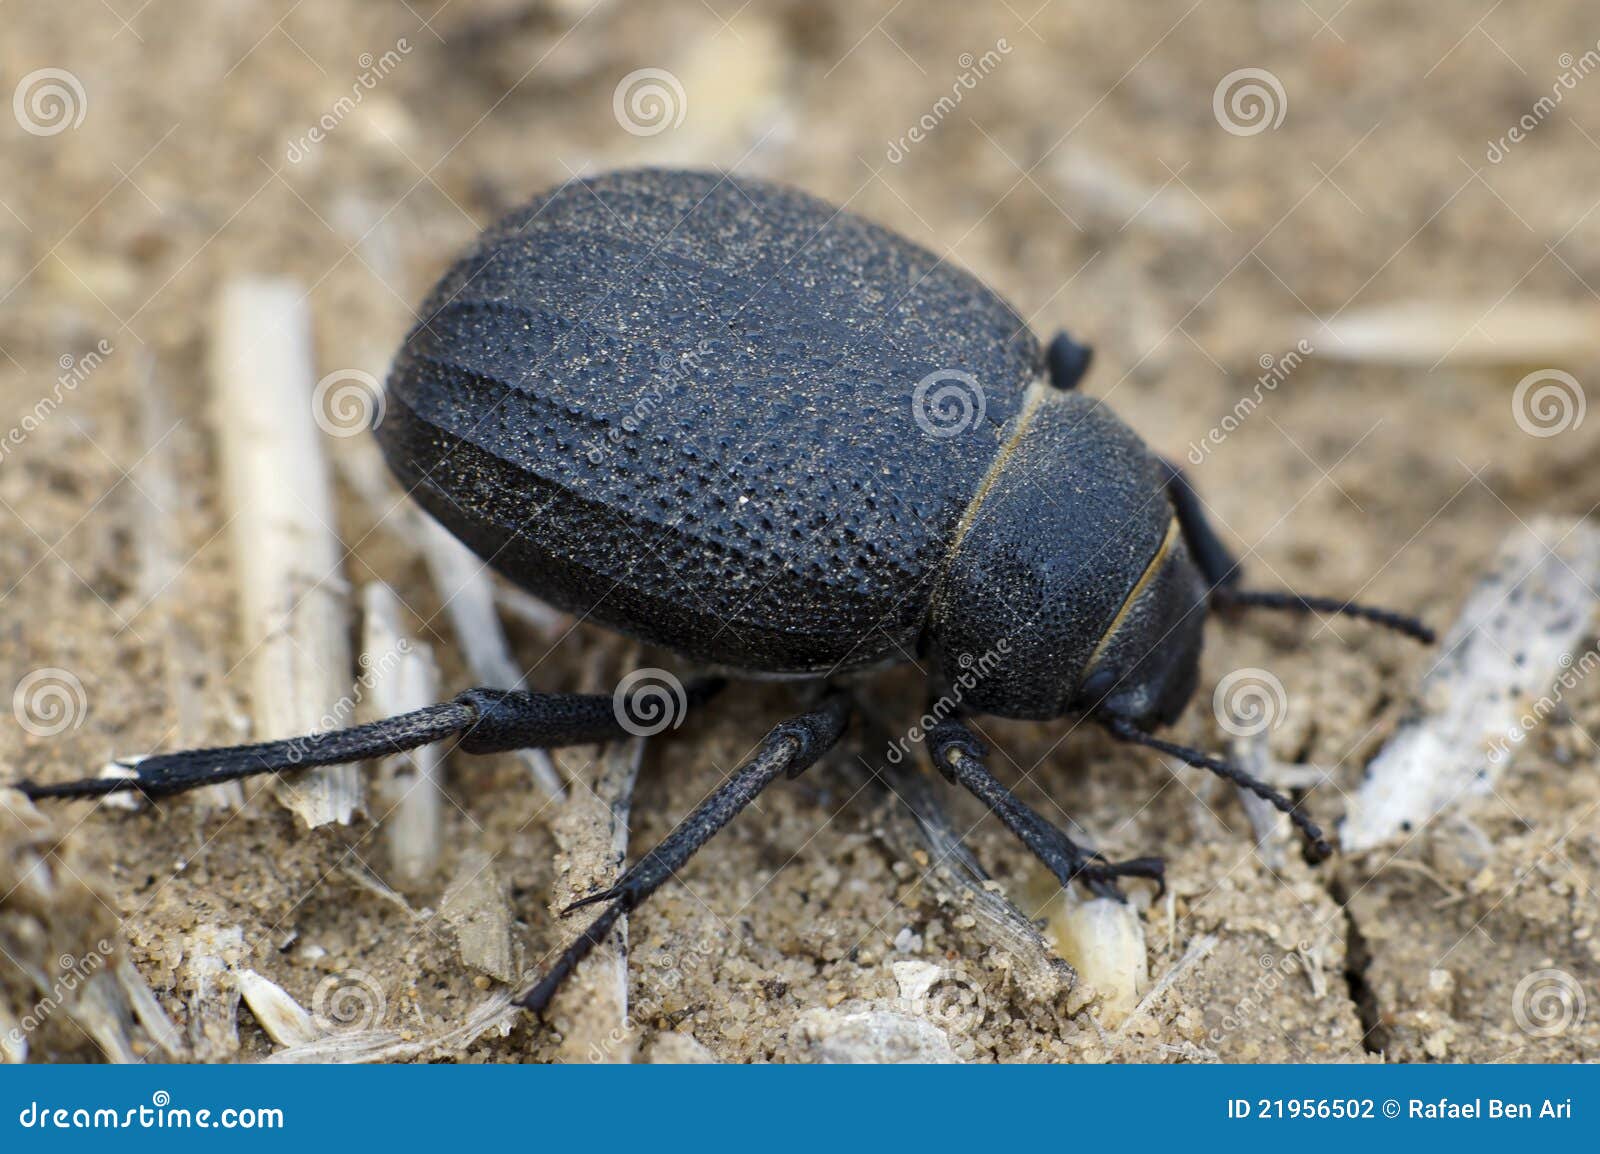 escarabajo-del-desierto-de-namib-21956502.jpg